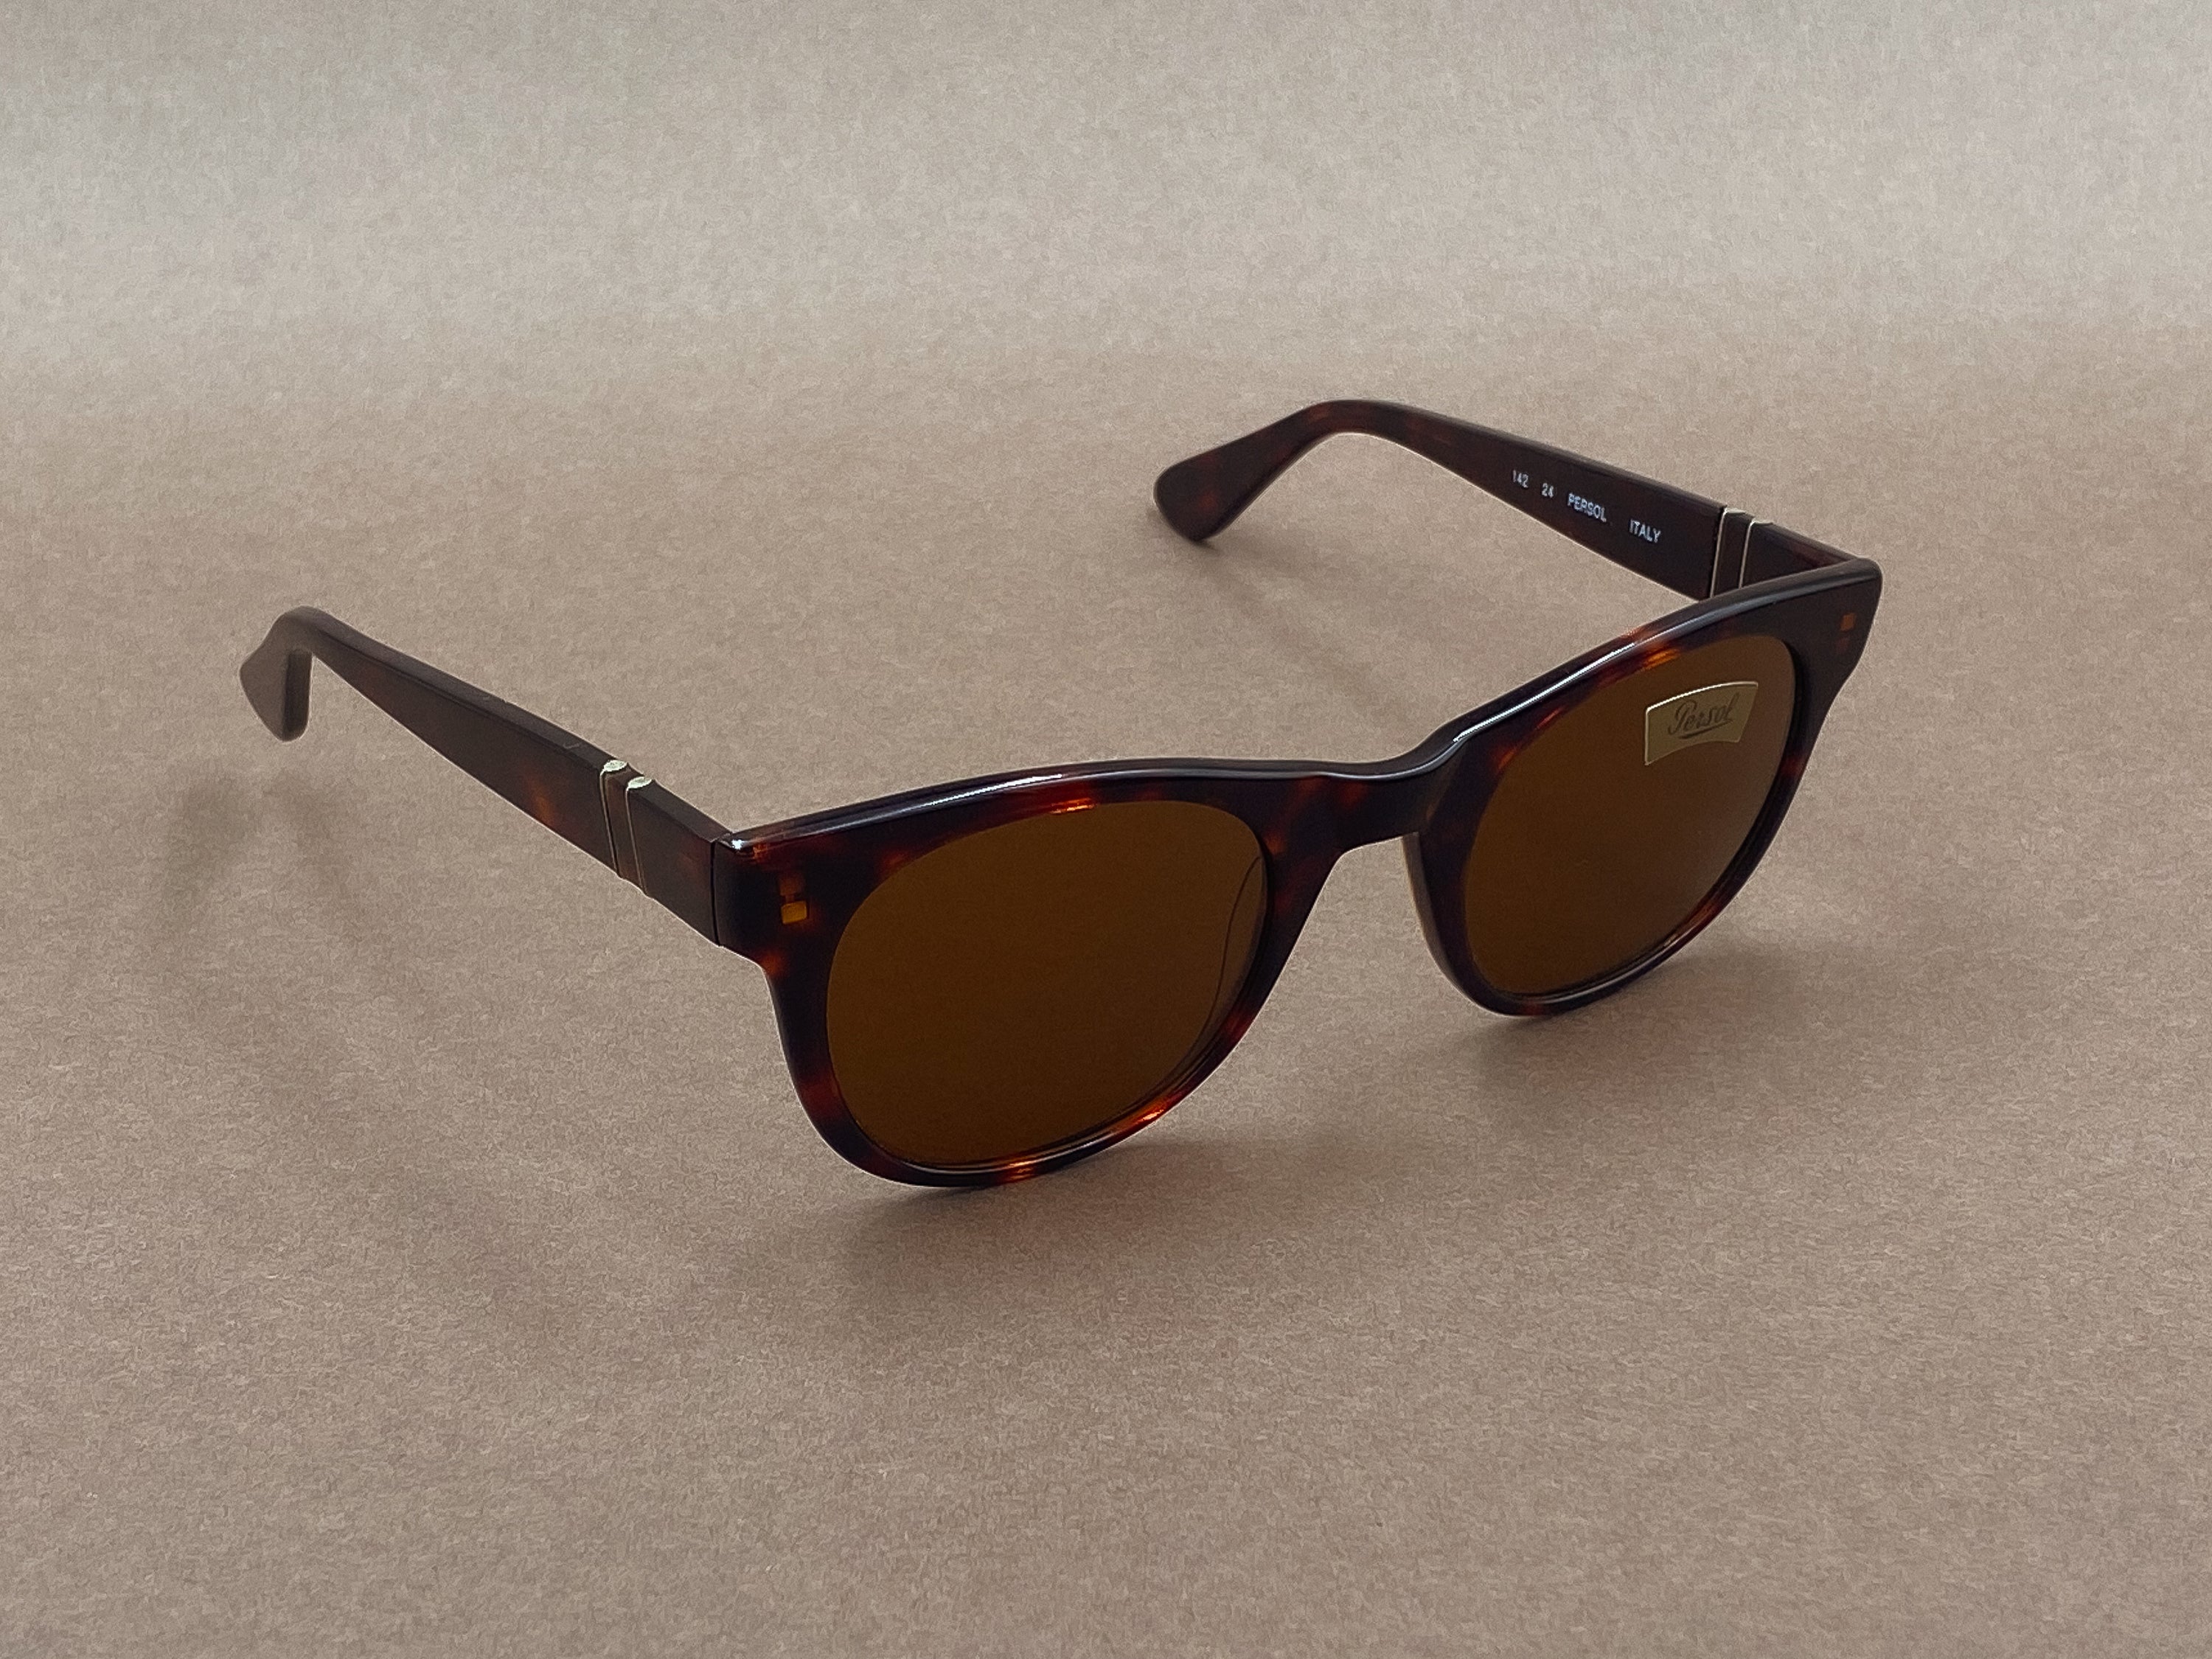 Persol 856 sunglasses